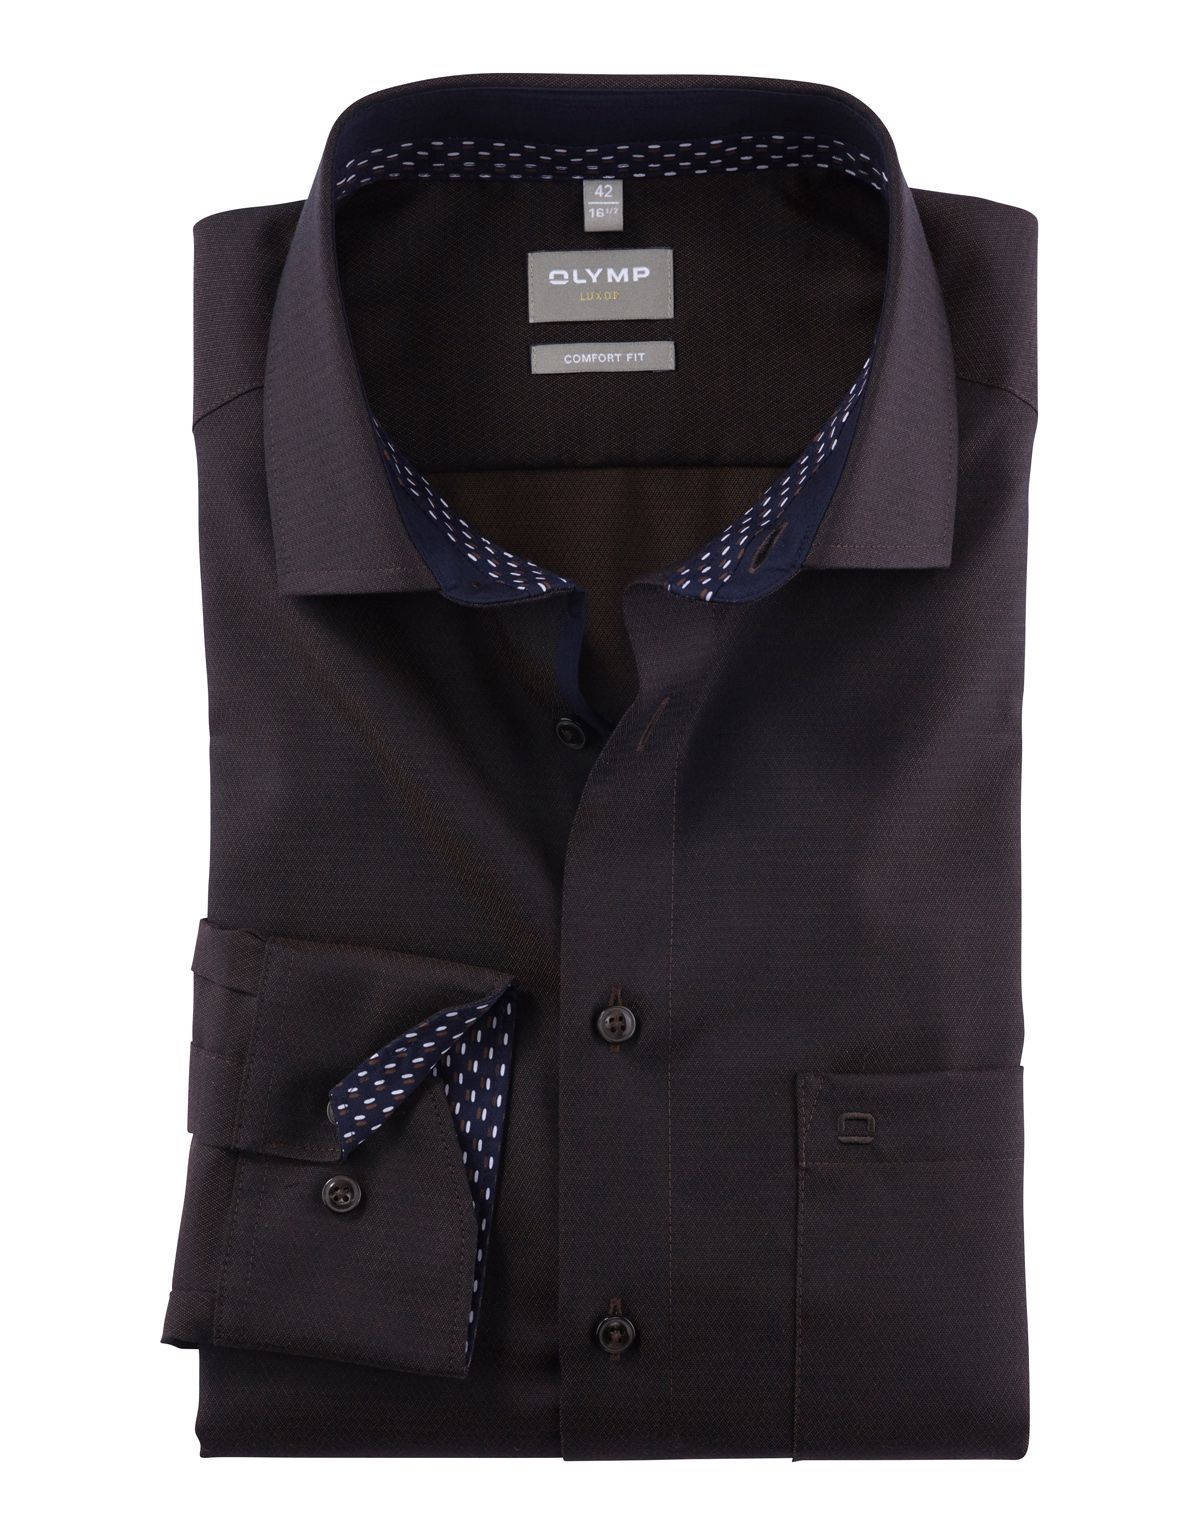 Рубашка деловая мужская OLYMP Luxor, прямой крой, фактурная ткань[КОРИЧНЕВЫЙ]